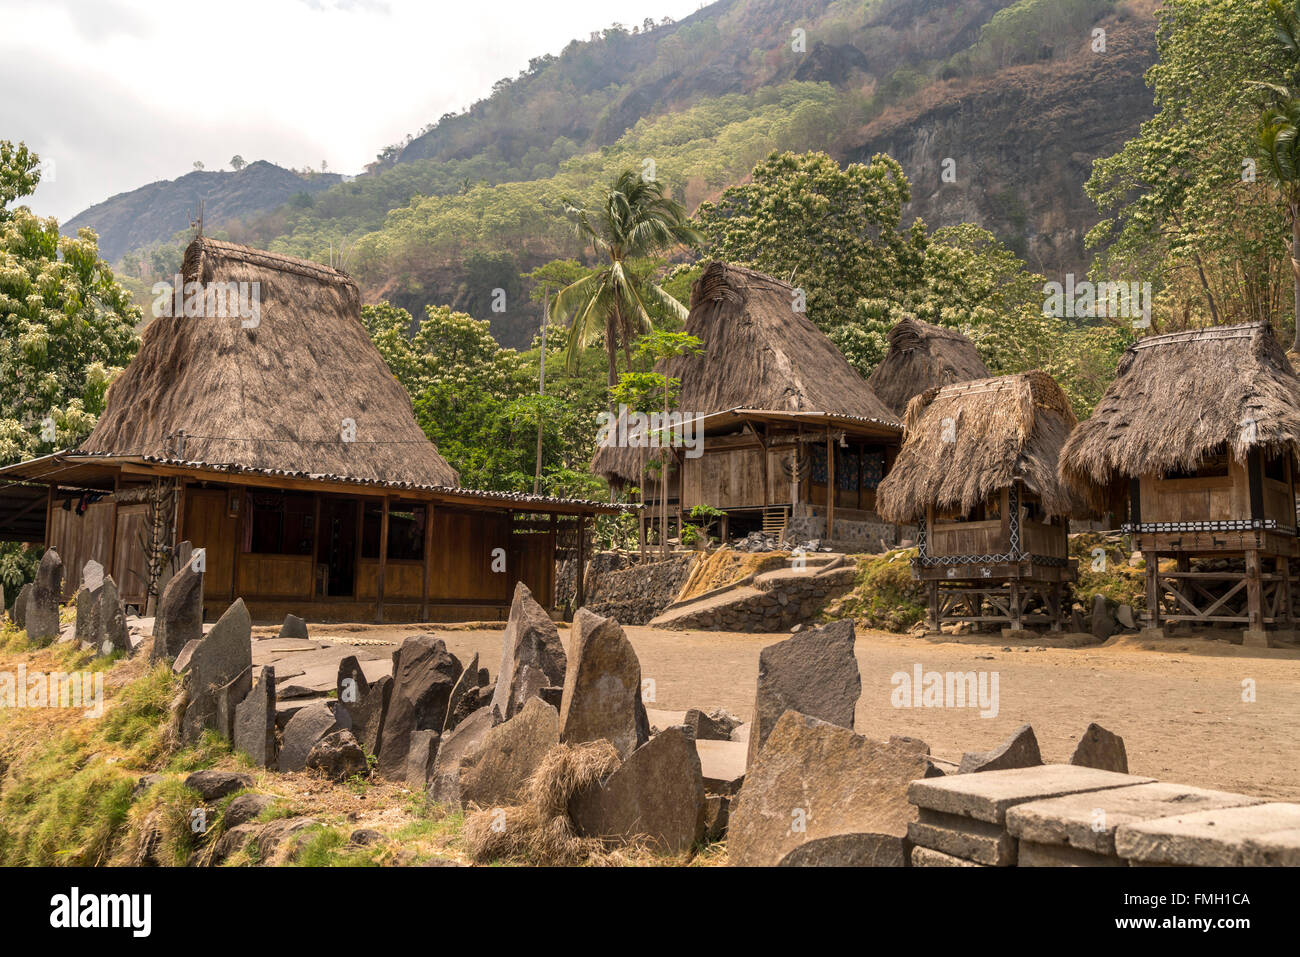 traditionelle hohe strohgedeckte Häuser, Megalithes und Schreinen in der Ngada Dorf Bena in der Nähe von Bajawa, Flores, Indonesien, Asien Stockfoto